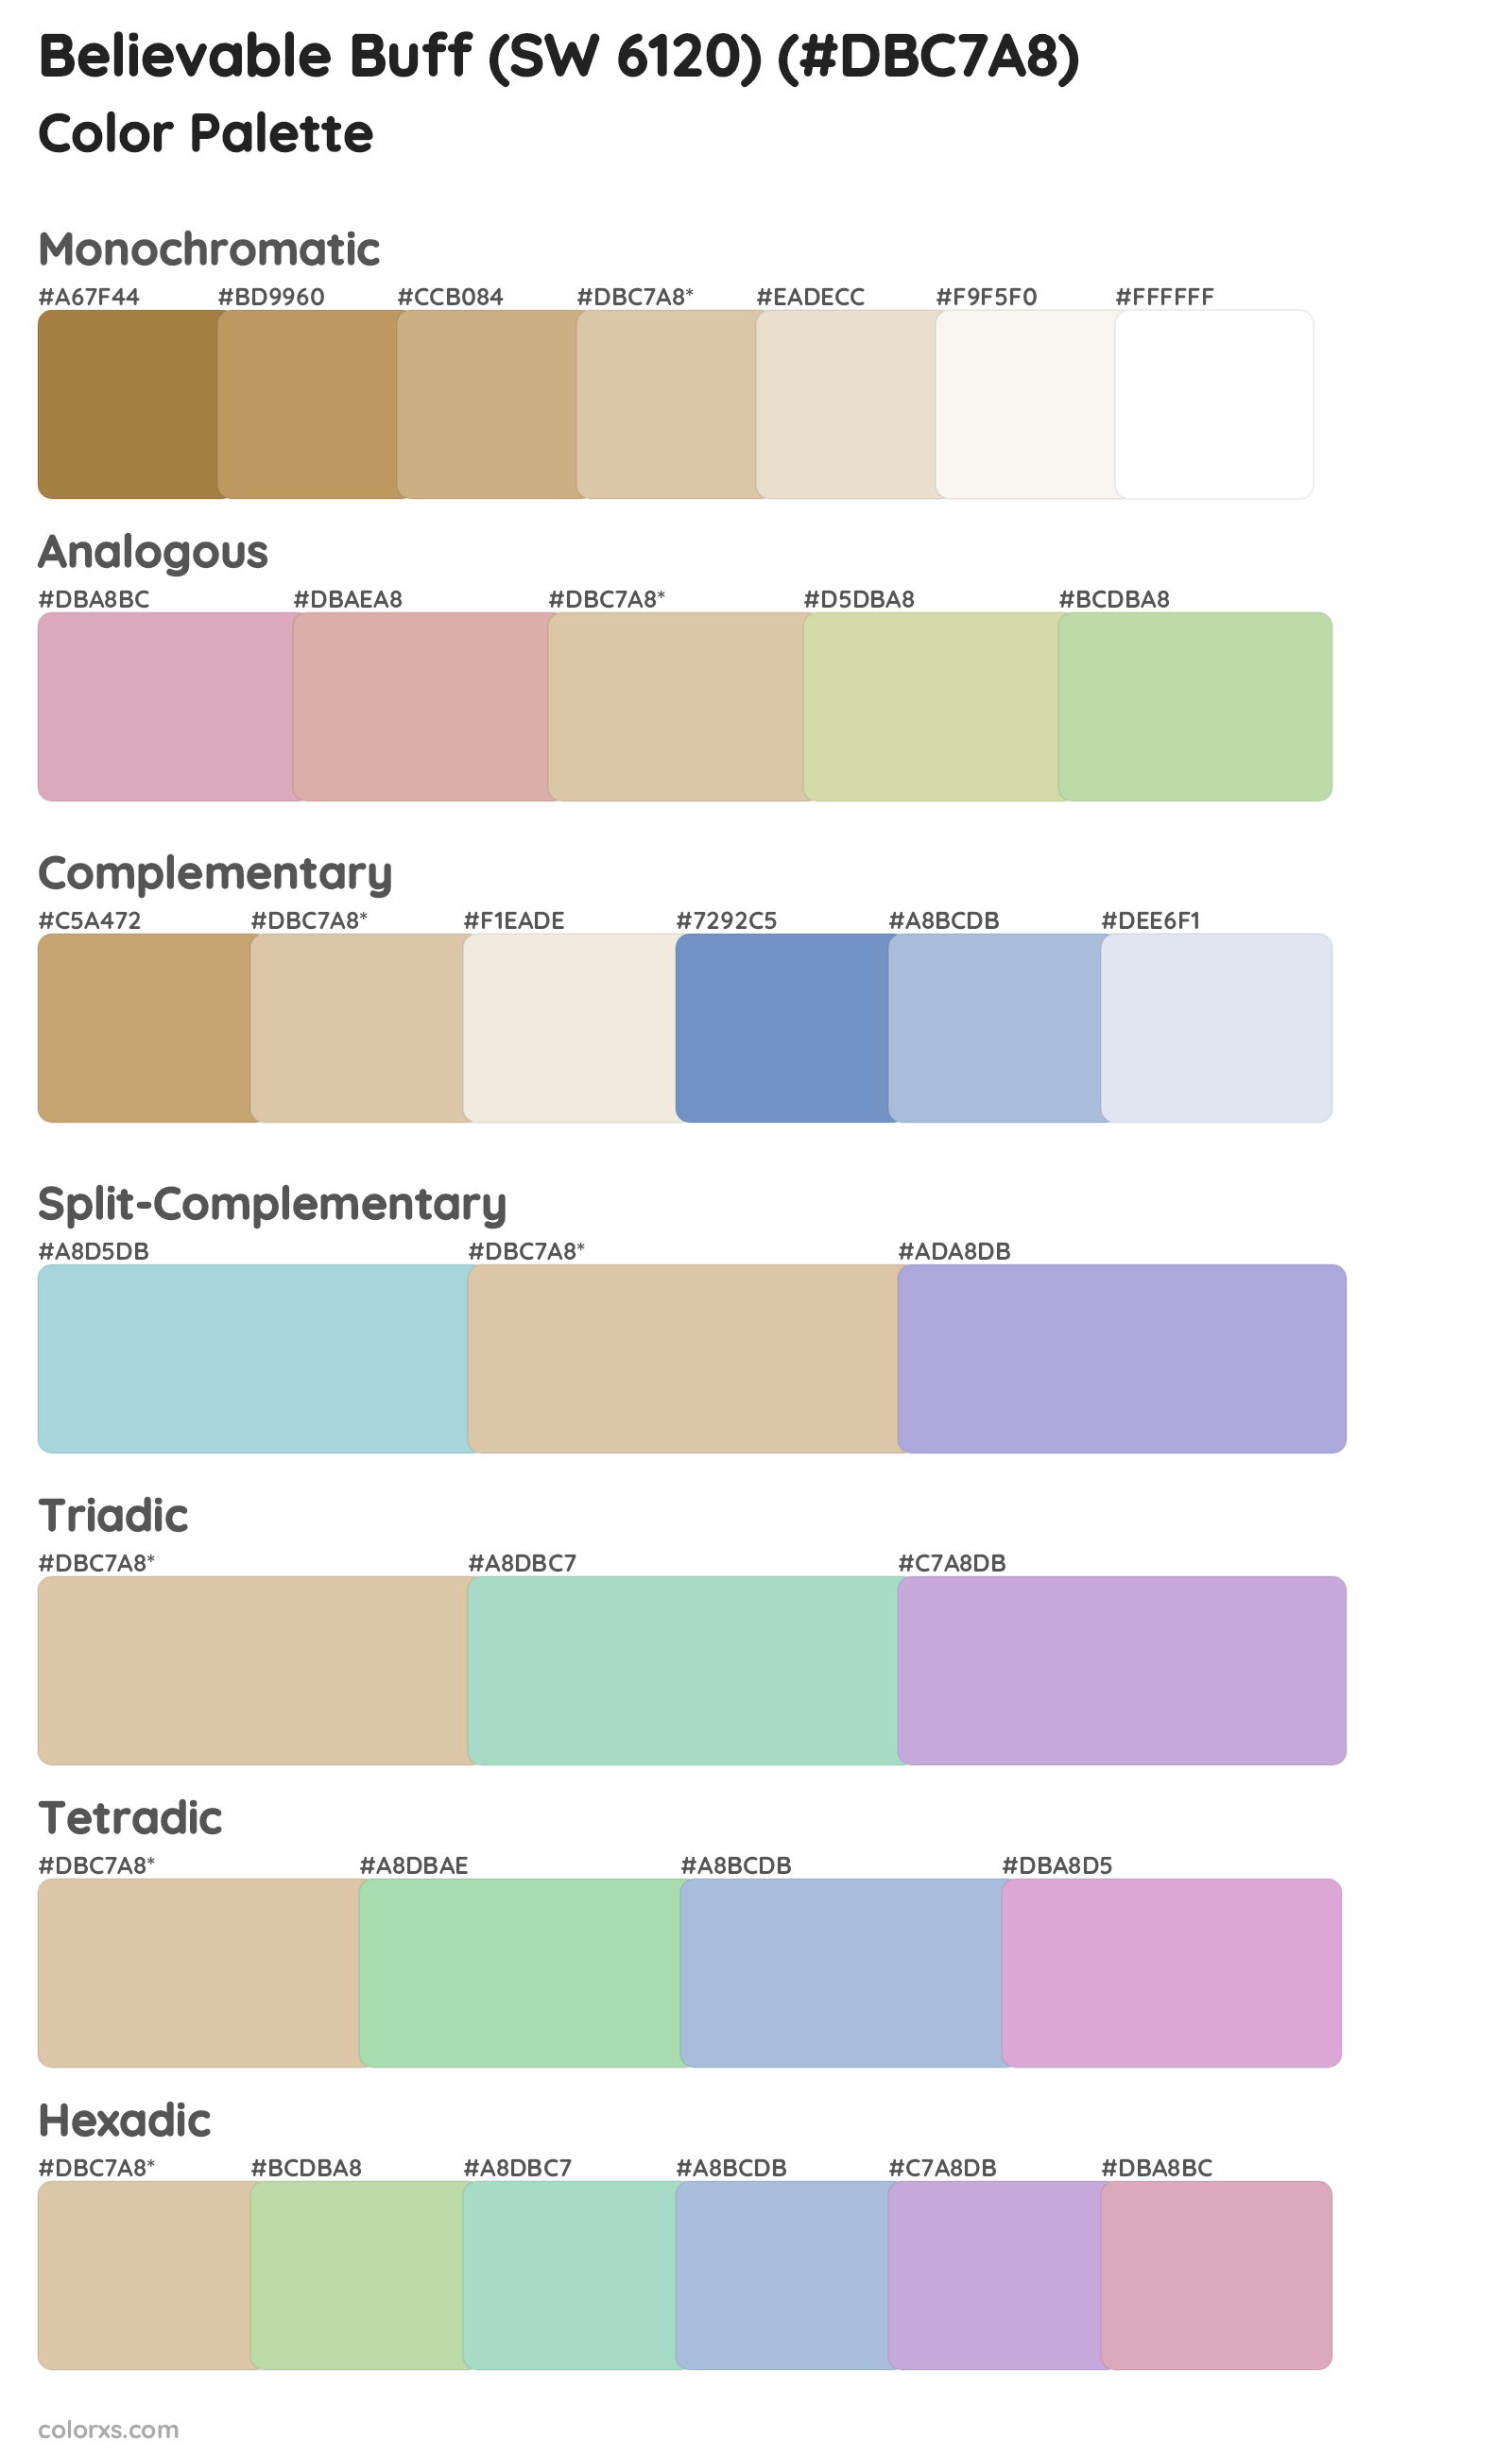 Believable Buff (SW 6120) Color Scheme Palettes